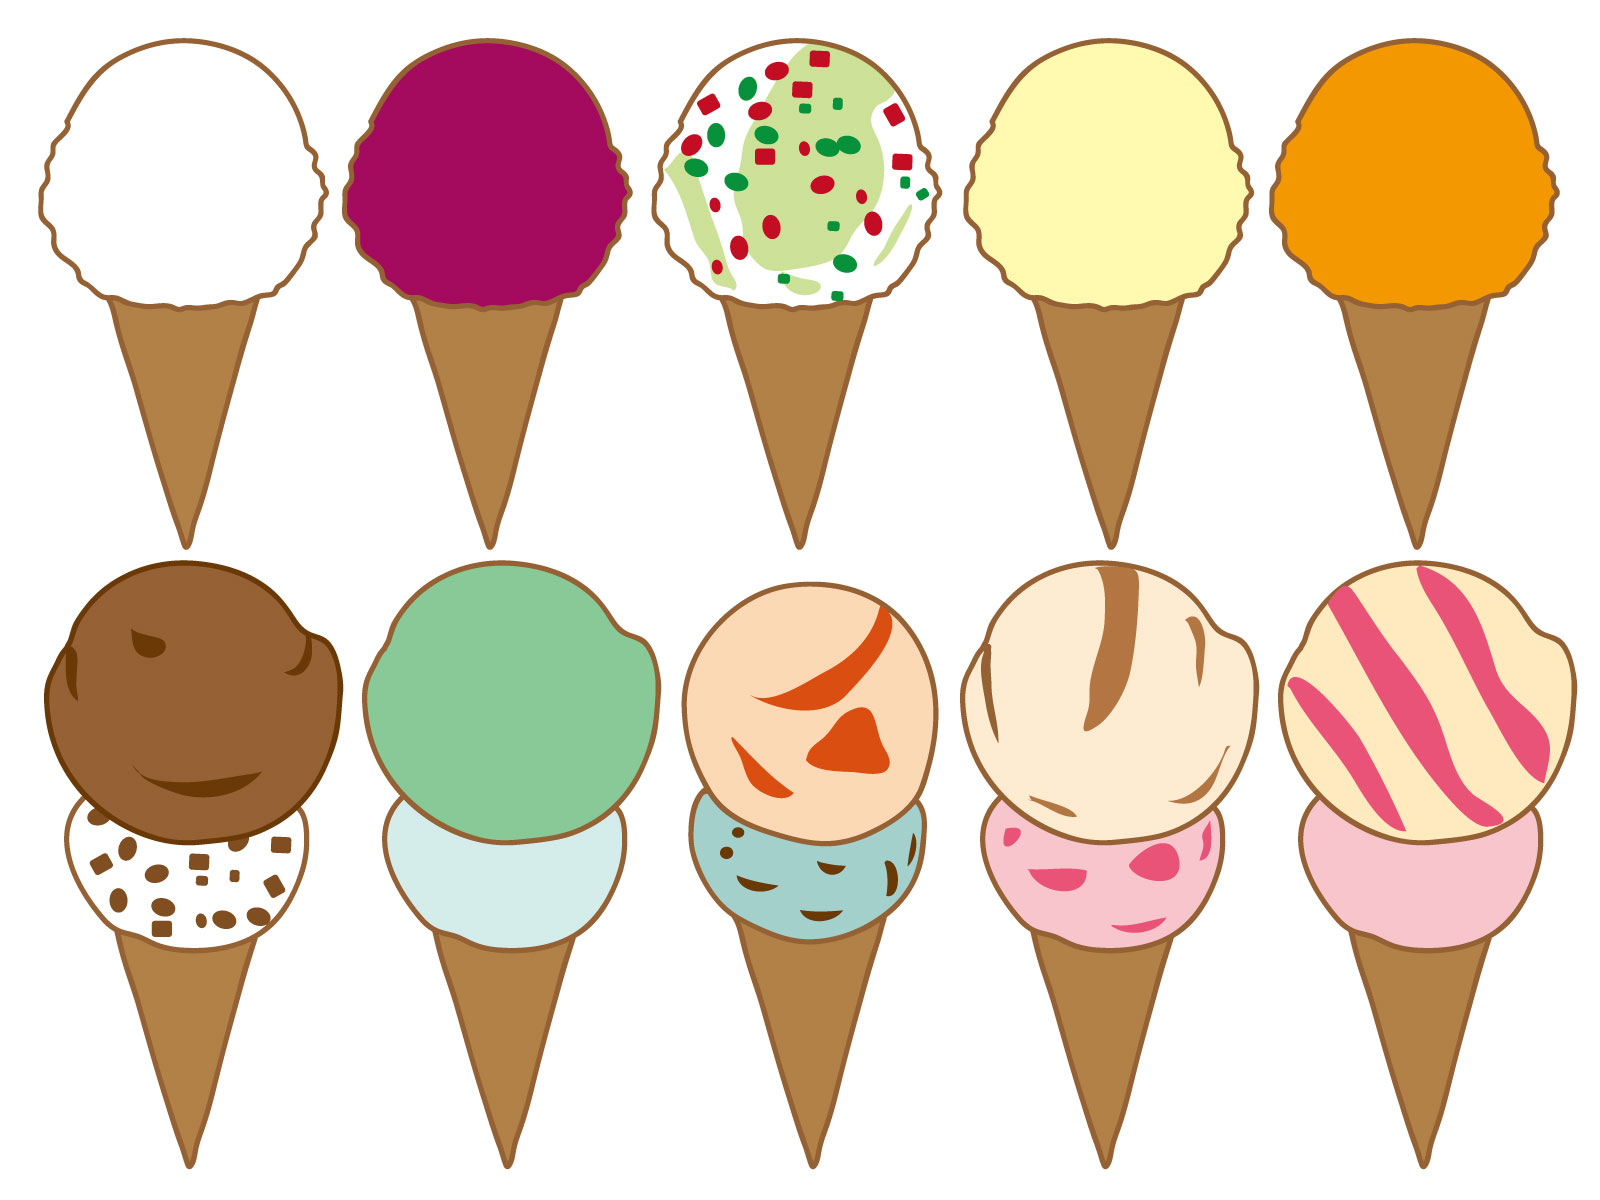 31アイスクリーム初心者のための注文方法 値段 カロリーなど コンビニとファミレスのスイーツのおすすめを紹介するブログ